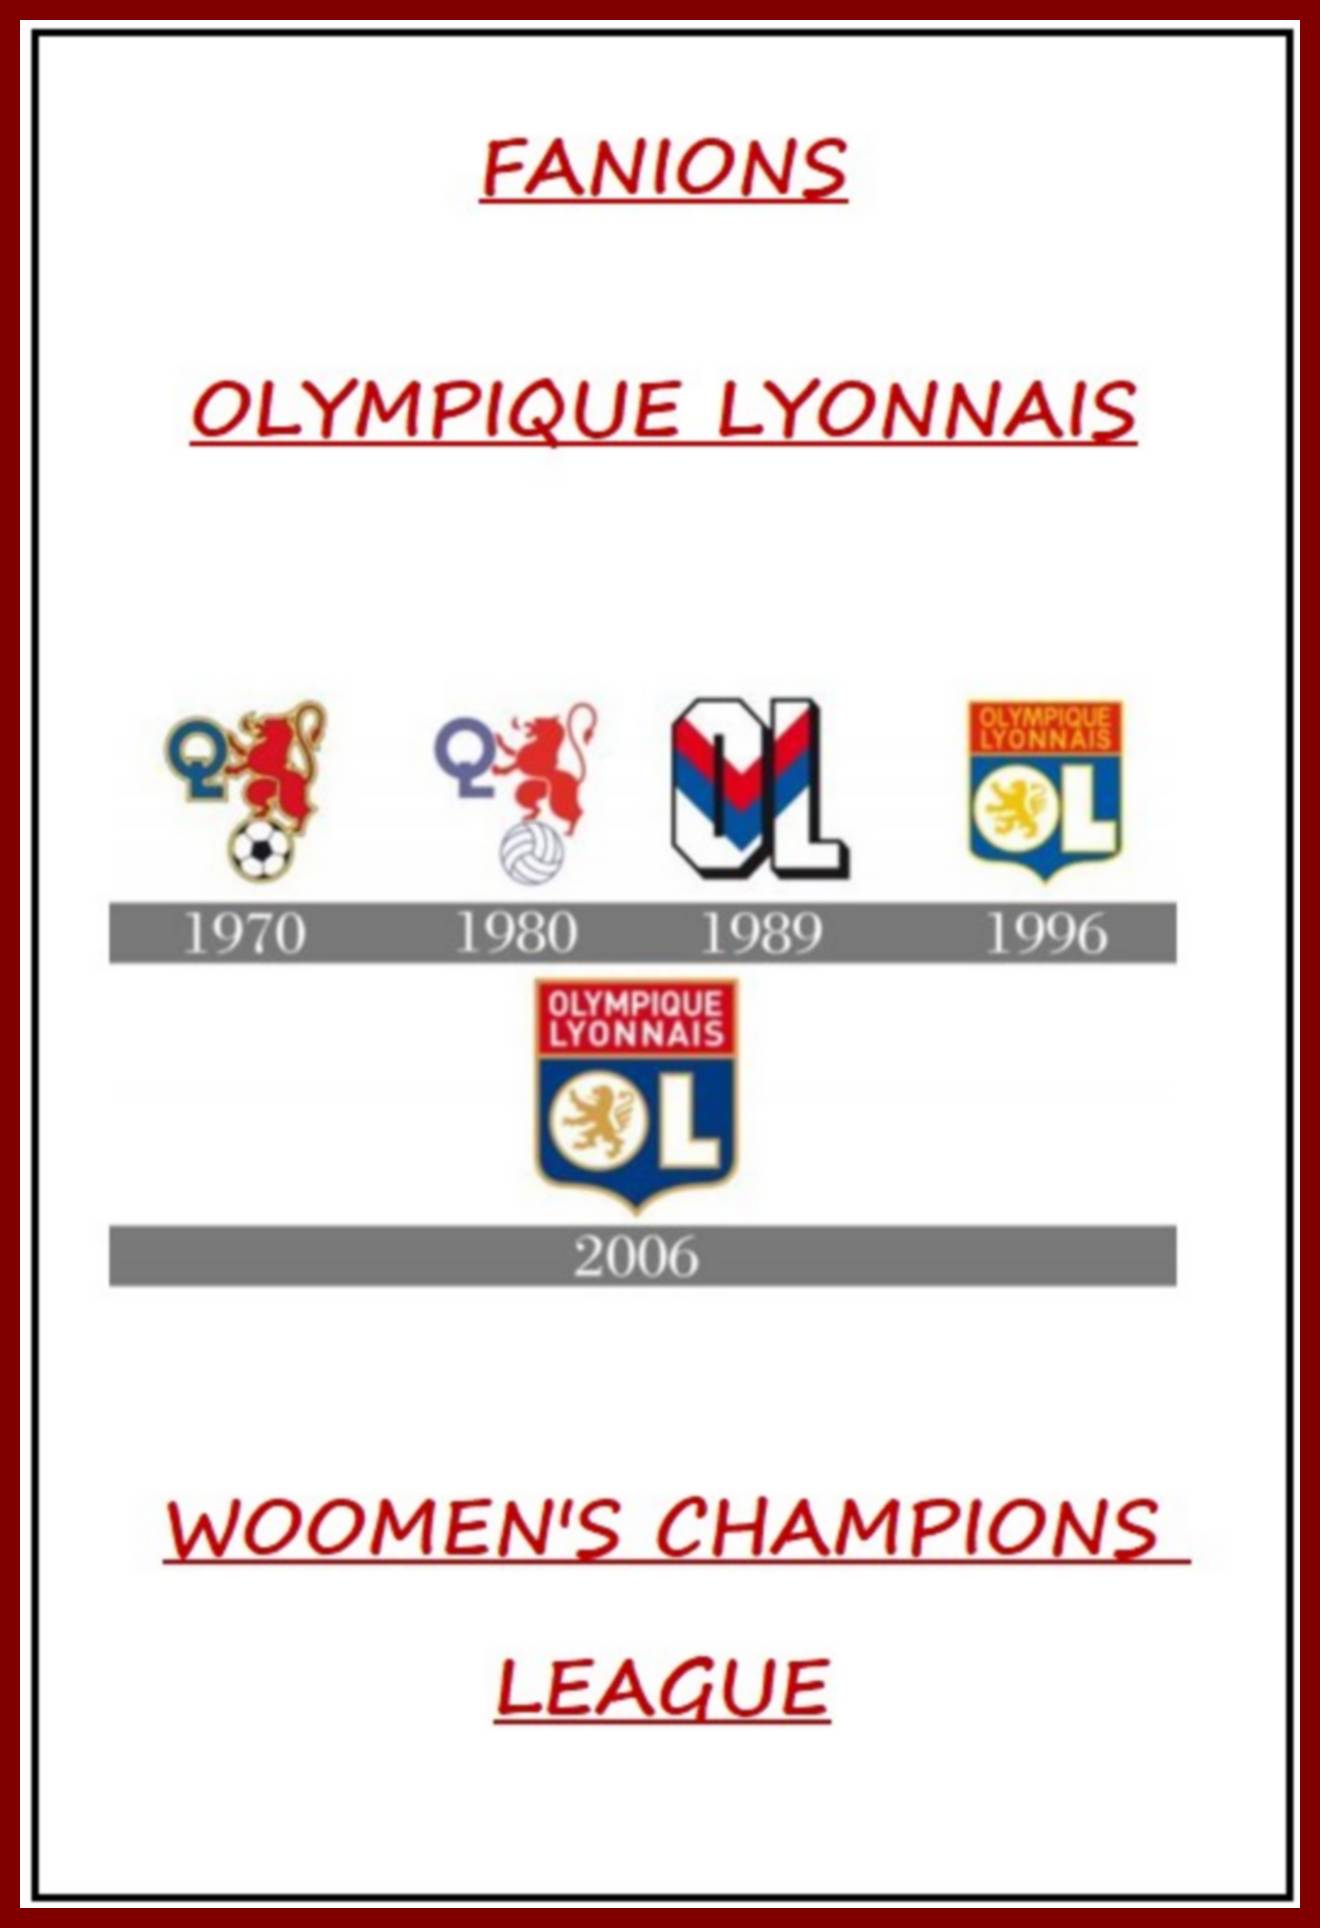 Photo 615 OLYMPIQUE LYONNAIS - WOOMEN'S CHAMPIONS LEAGUE  (Page 00)